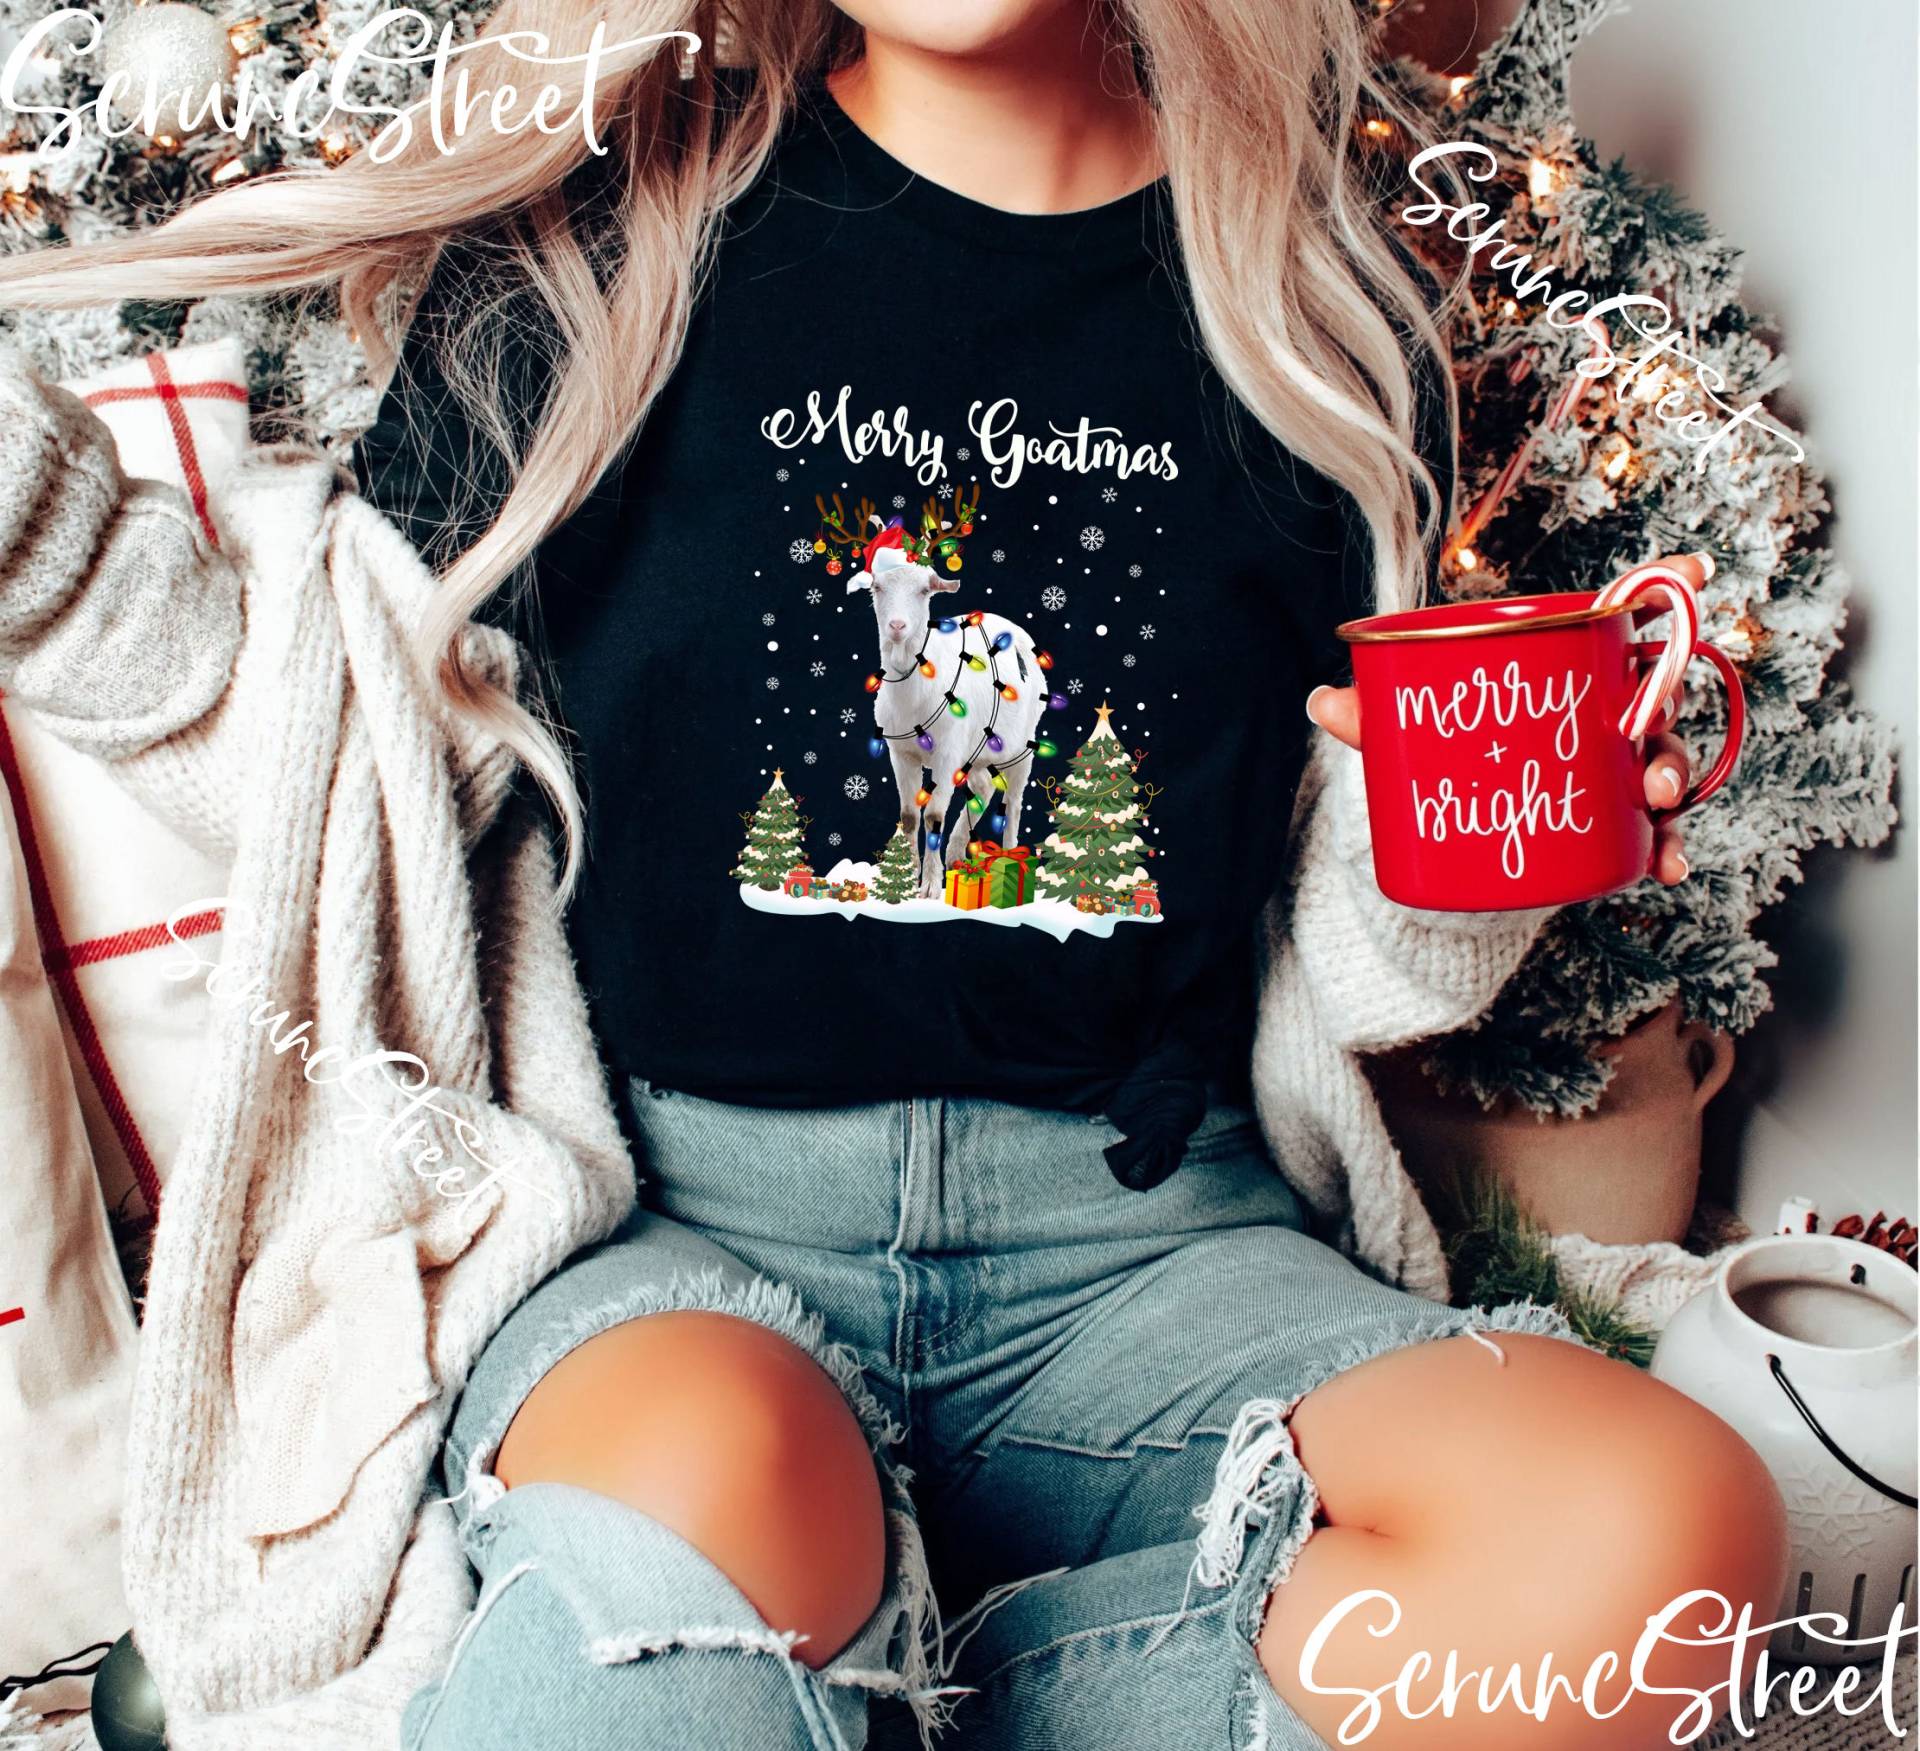 Lustiges Ziegenhemd - Ziegenliebhaber Weihnachtsshirt Weihnachtsgeschenke Für Bauernziege Liebhaber Ziege Shirt Mit Weihnachtsmütze Tannenbaum von ScruncStreet